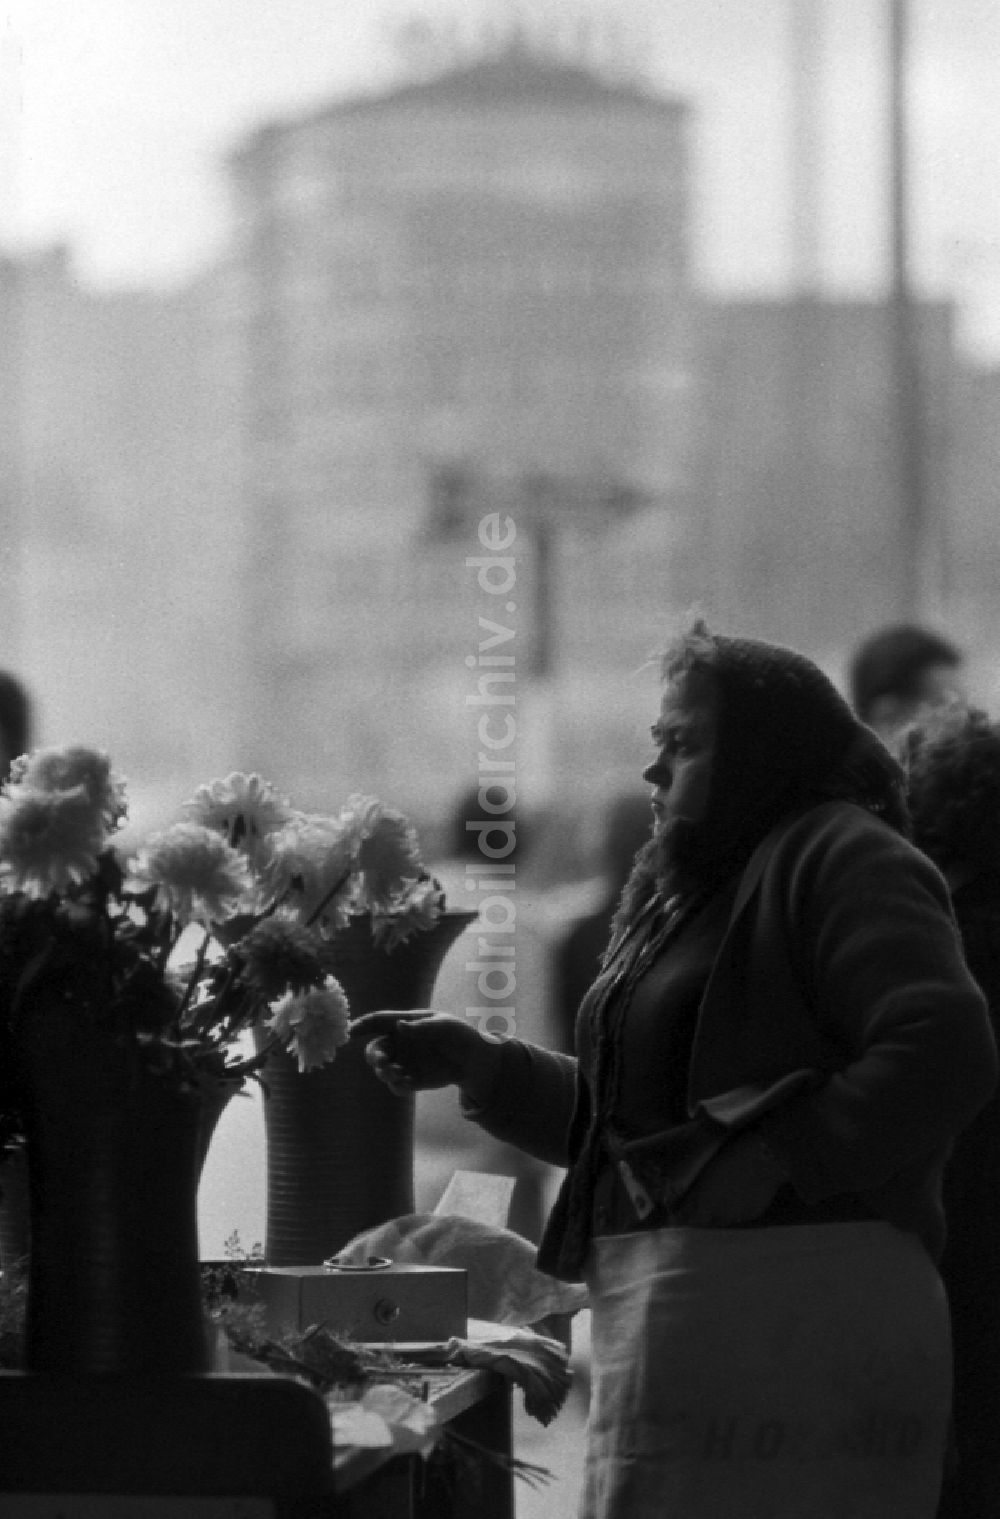 Berlin: Mitarbeiterin der Handelsorganisation HO verkauft Blumen in Ostberlin in der DDR